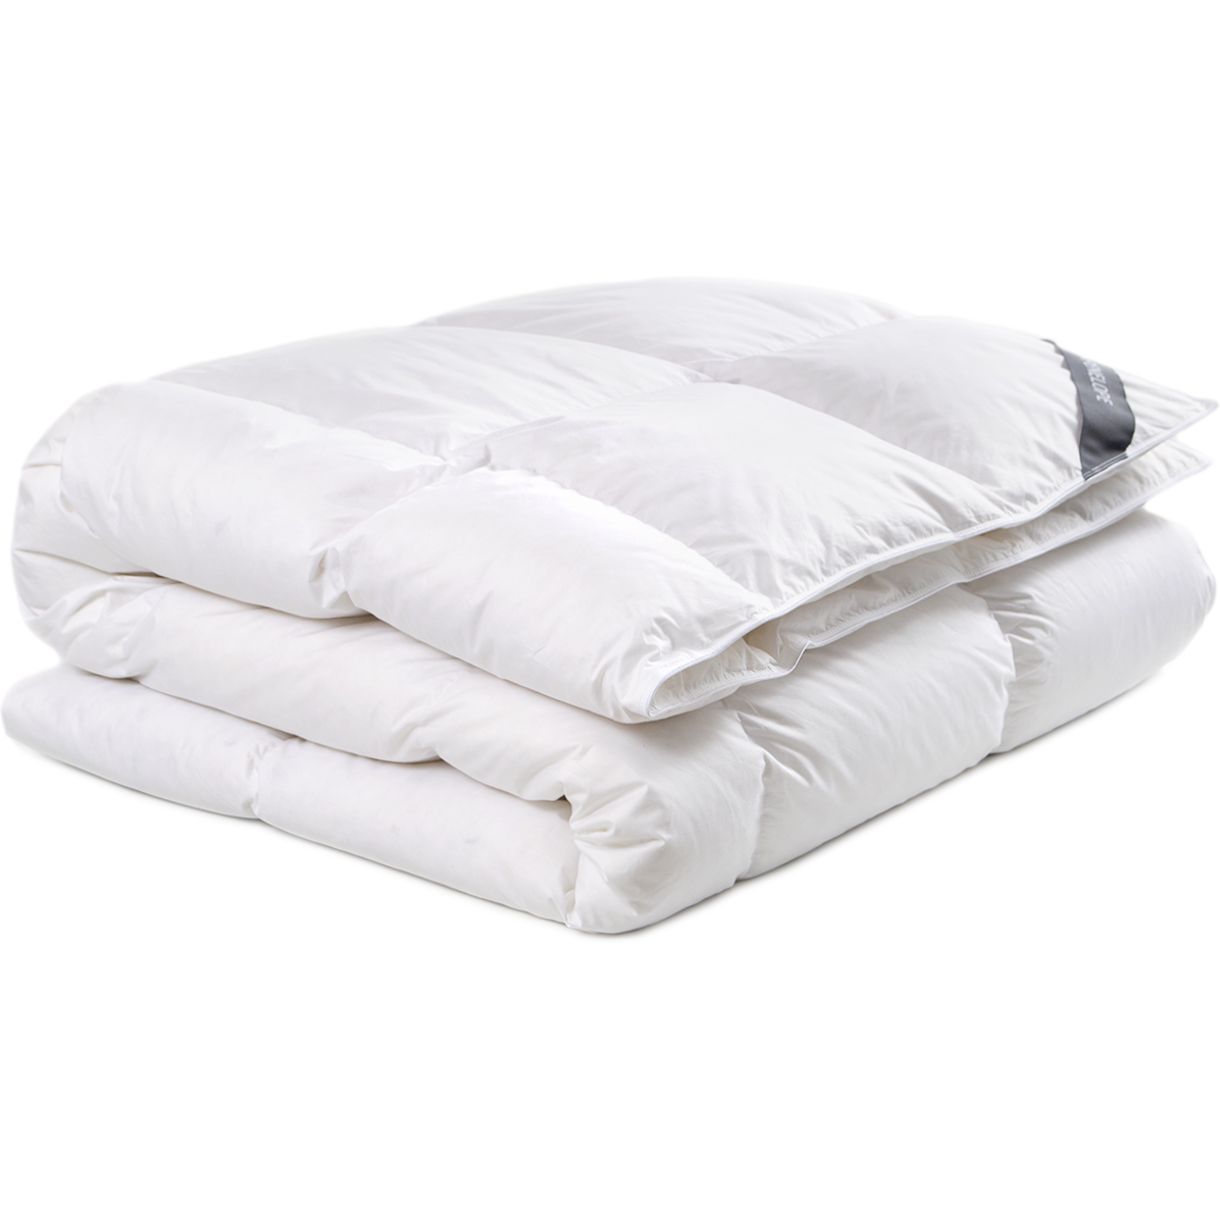 Одеяло Penelope Gold, пуховое, King size 240х220, белое (svt-2000022274517) - фото 1